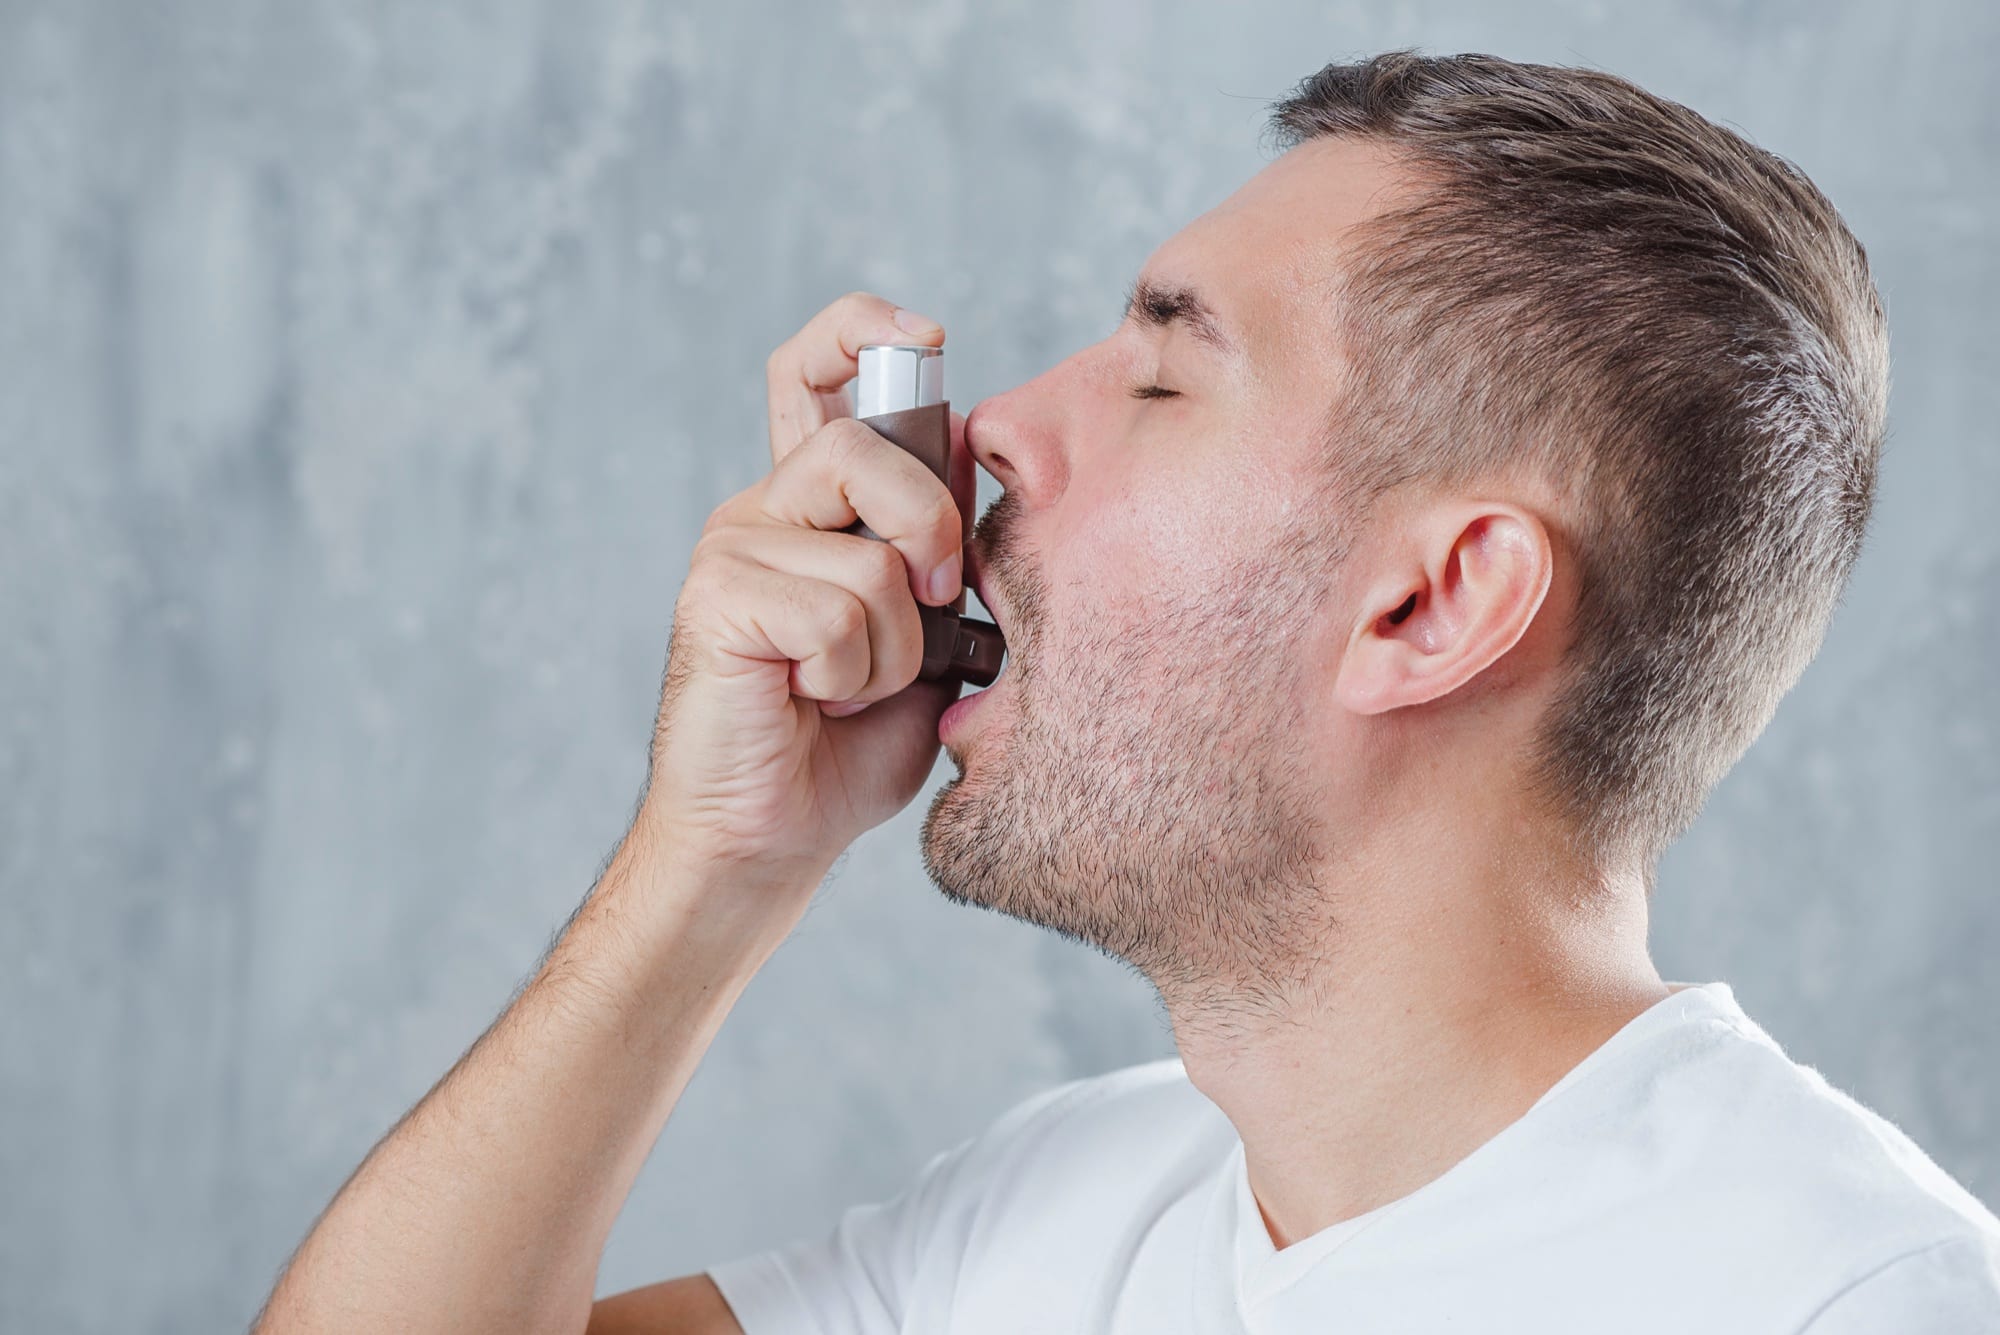 Image d'illustration pour l'article Prise en charge de l’asthme en cure thermale, ce qu’il faut savoir